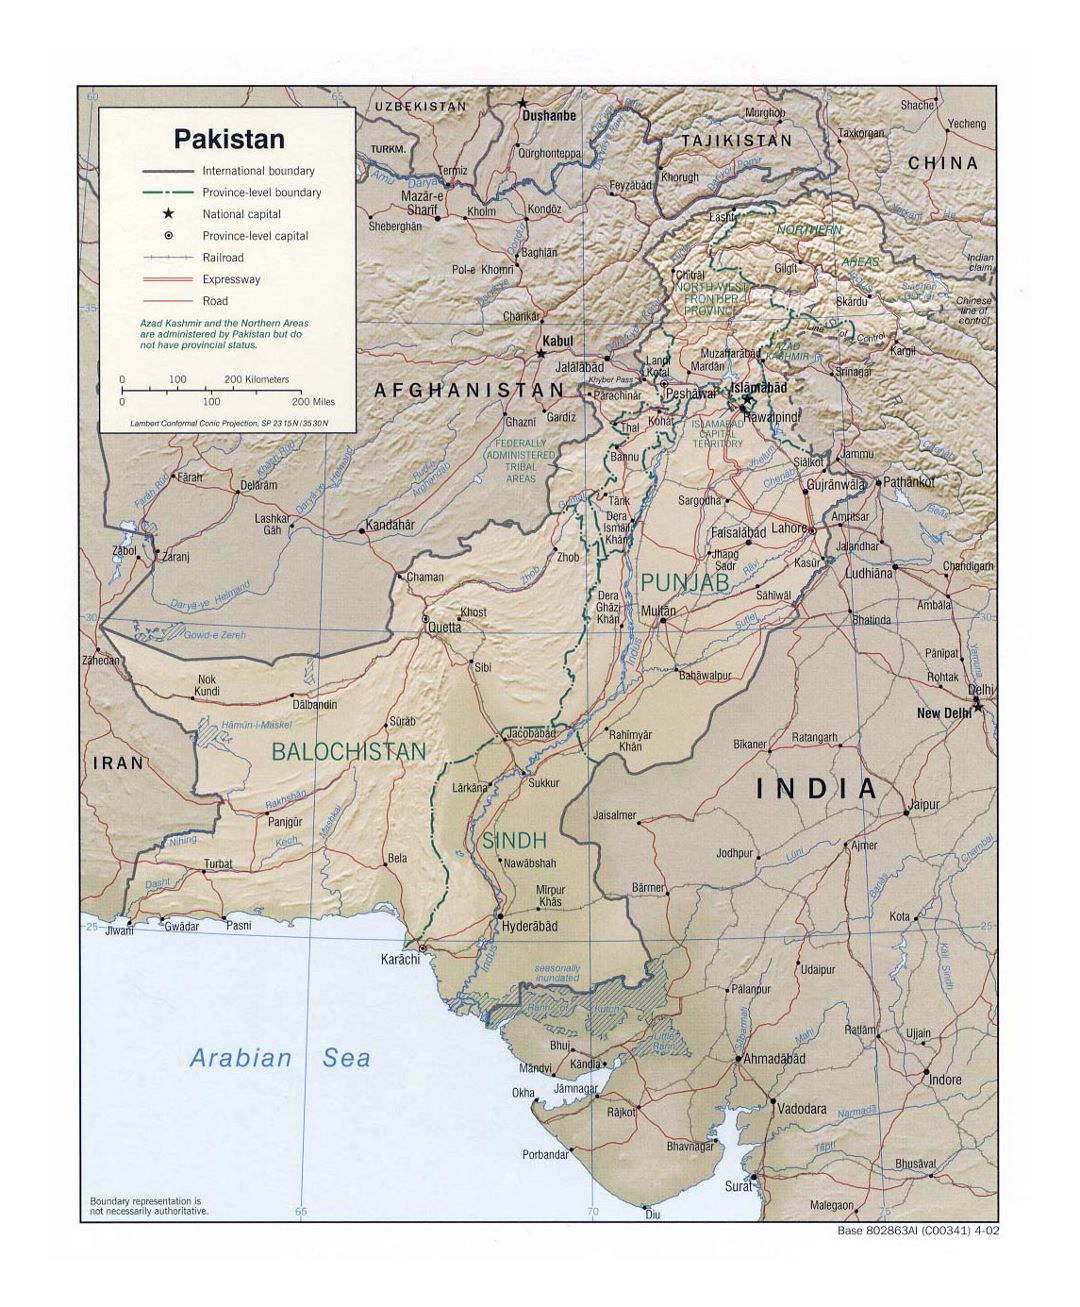 Detallado mapa político y administrativo de Pakistán con socorro, carreteras, ferrocarriles y principales ciudades - 2002